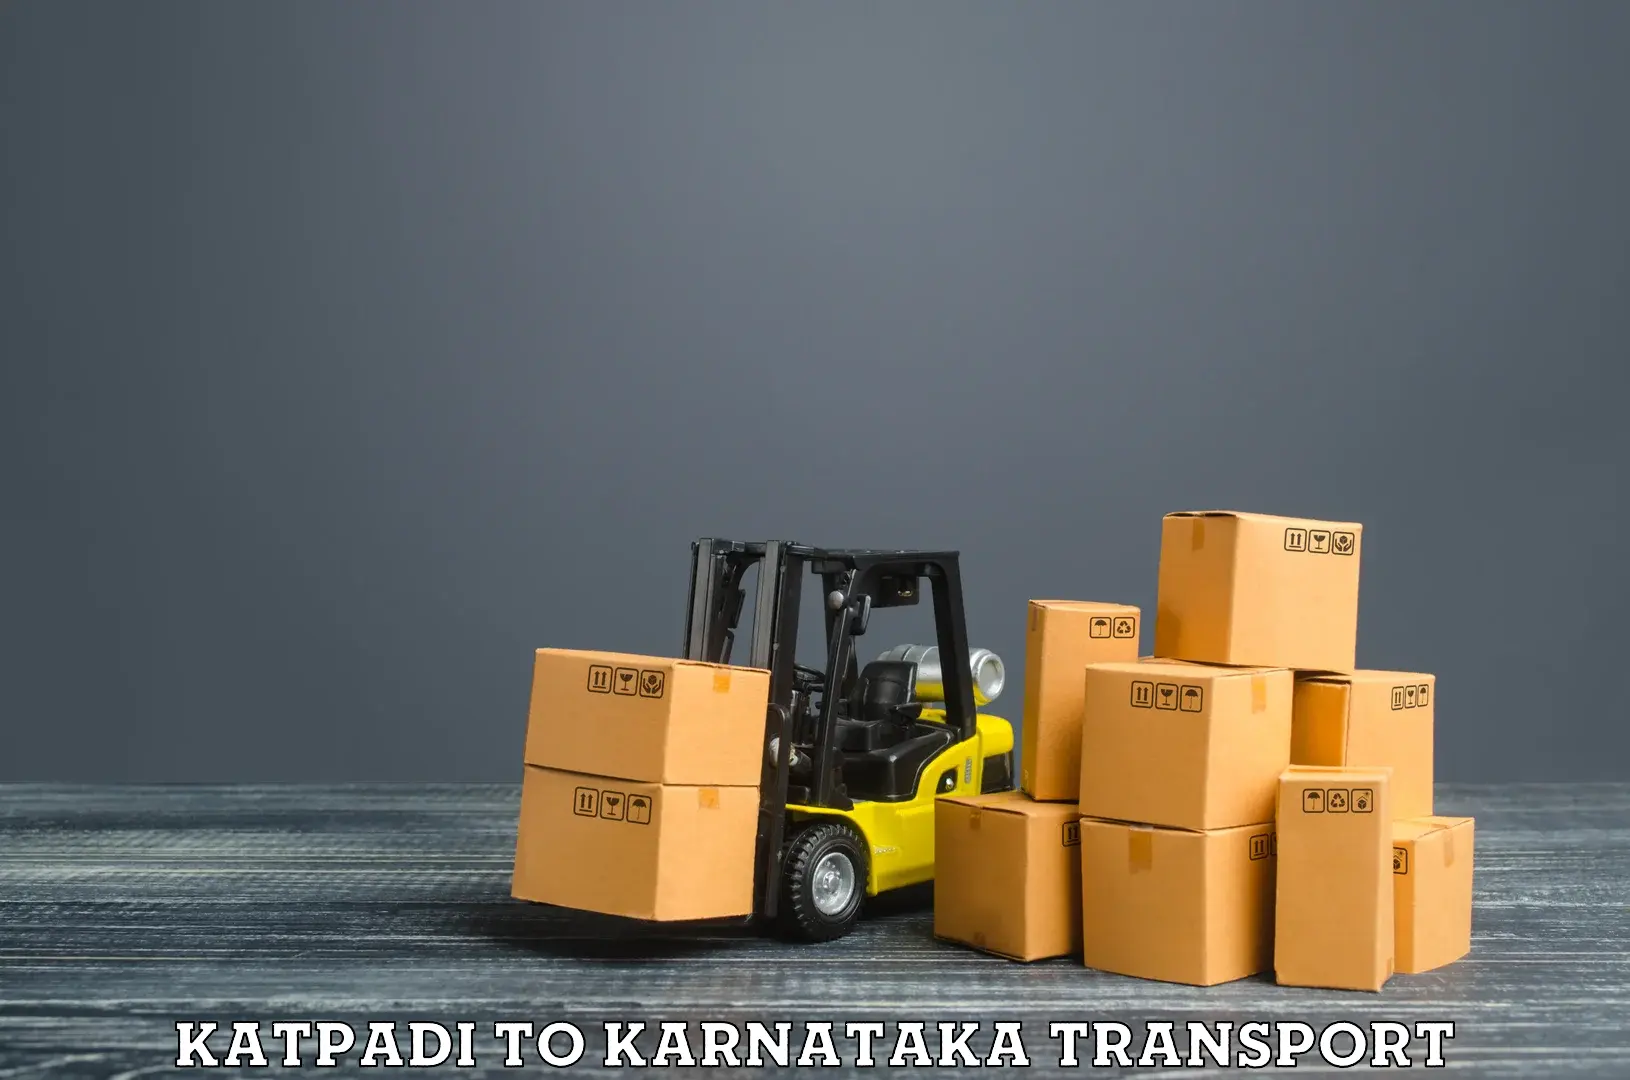 Cargo transport services Katpadi to Karnataka